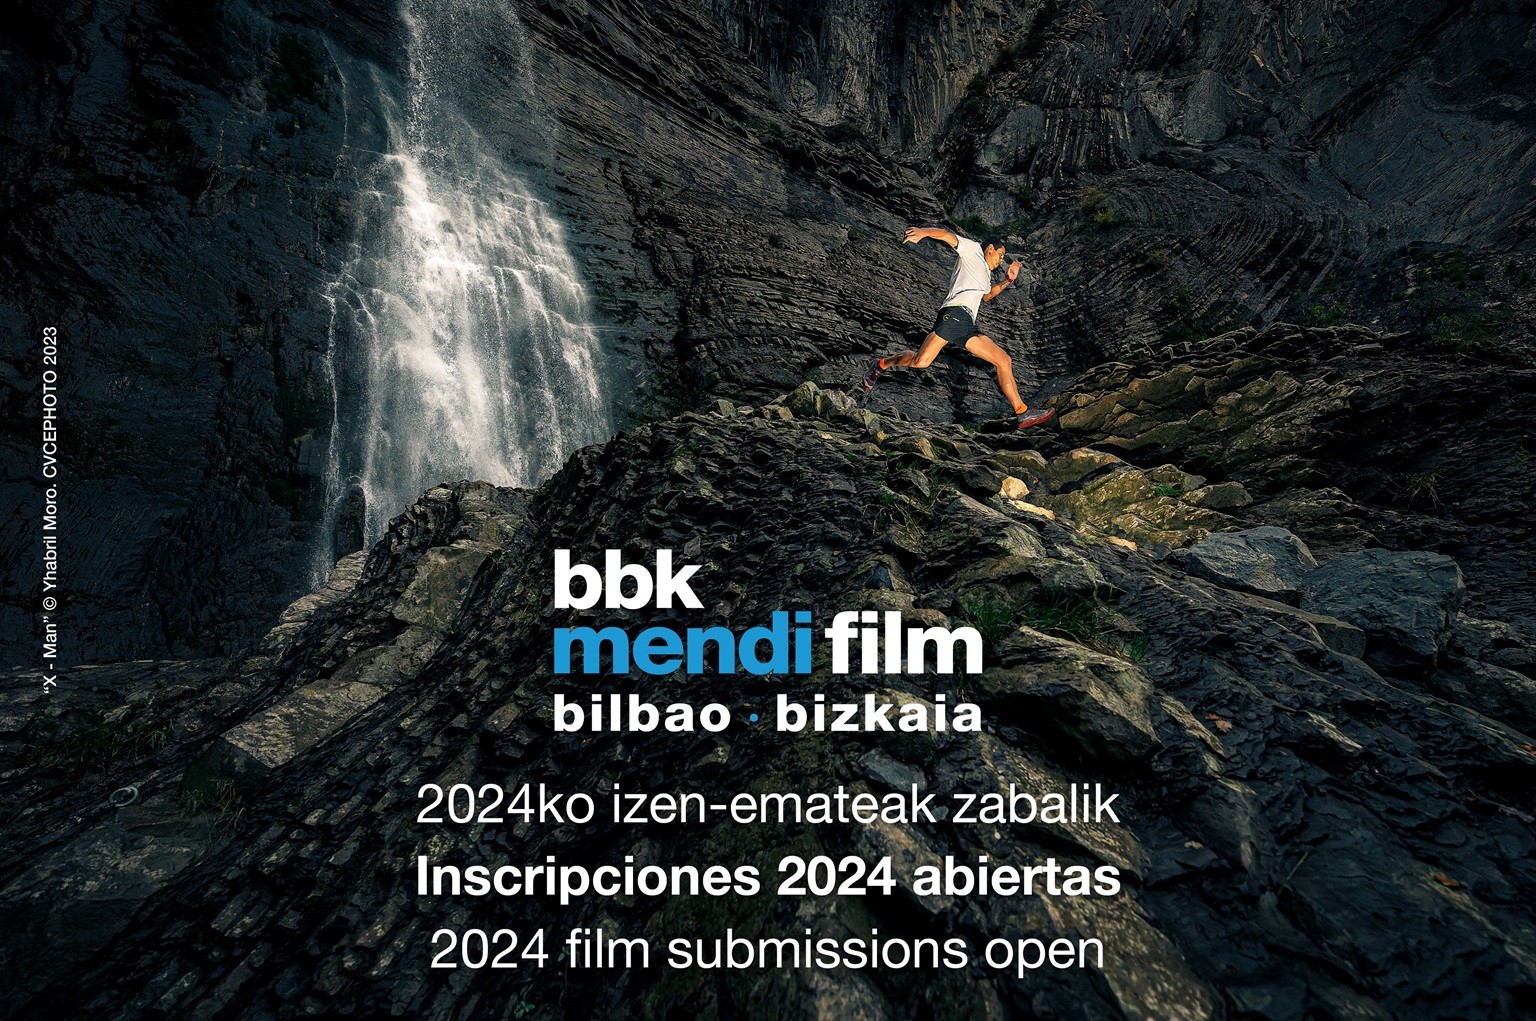 Abiertas las inscripciones de películas para la 17.ª edición de BBK Mendi Film Bilbao-Bizkaia que se celebrará del 6 al 15 de diciembre 2024